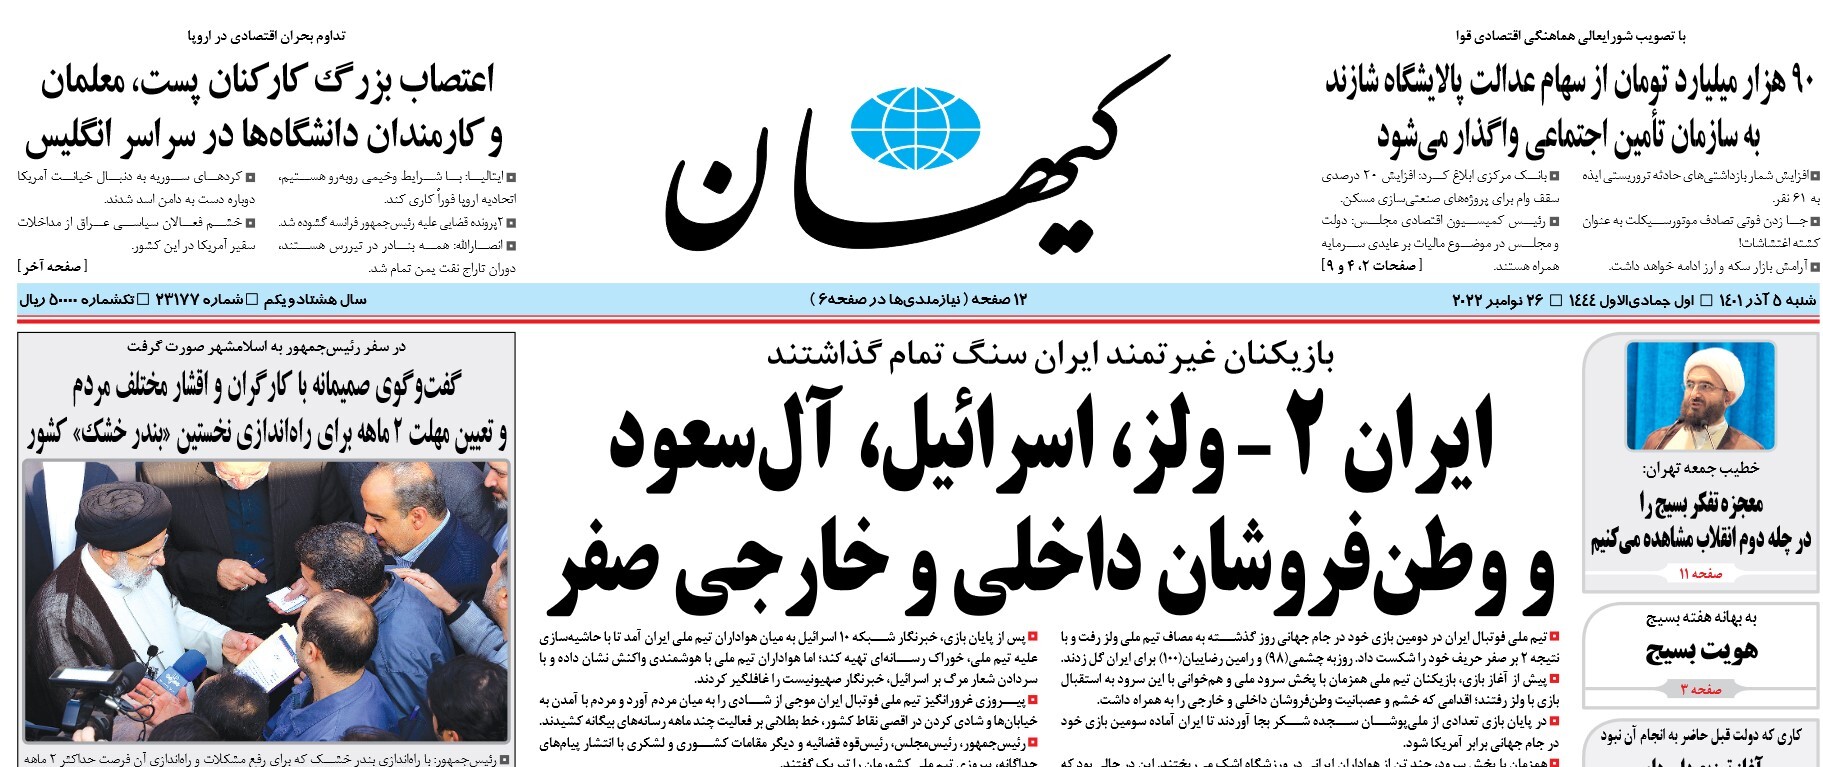 تیتر کیهان برای برد ایران برابر ولز